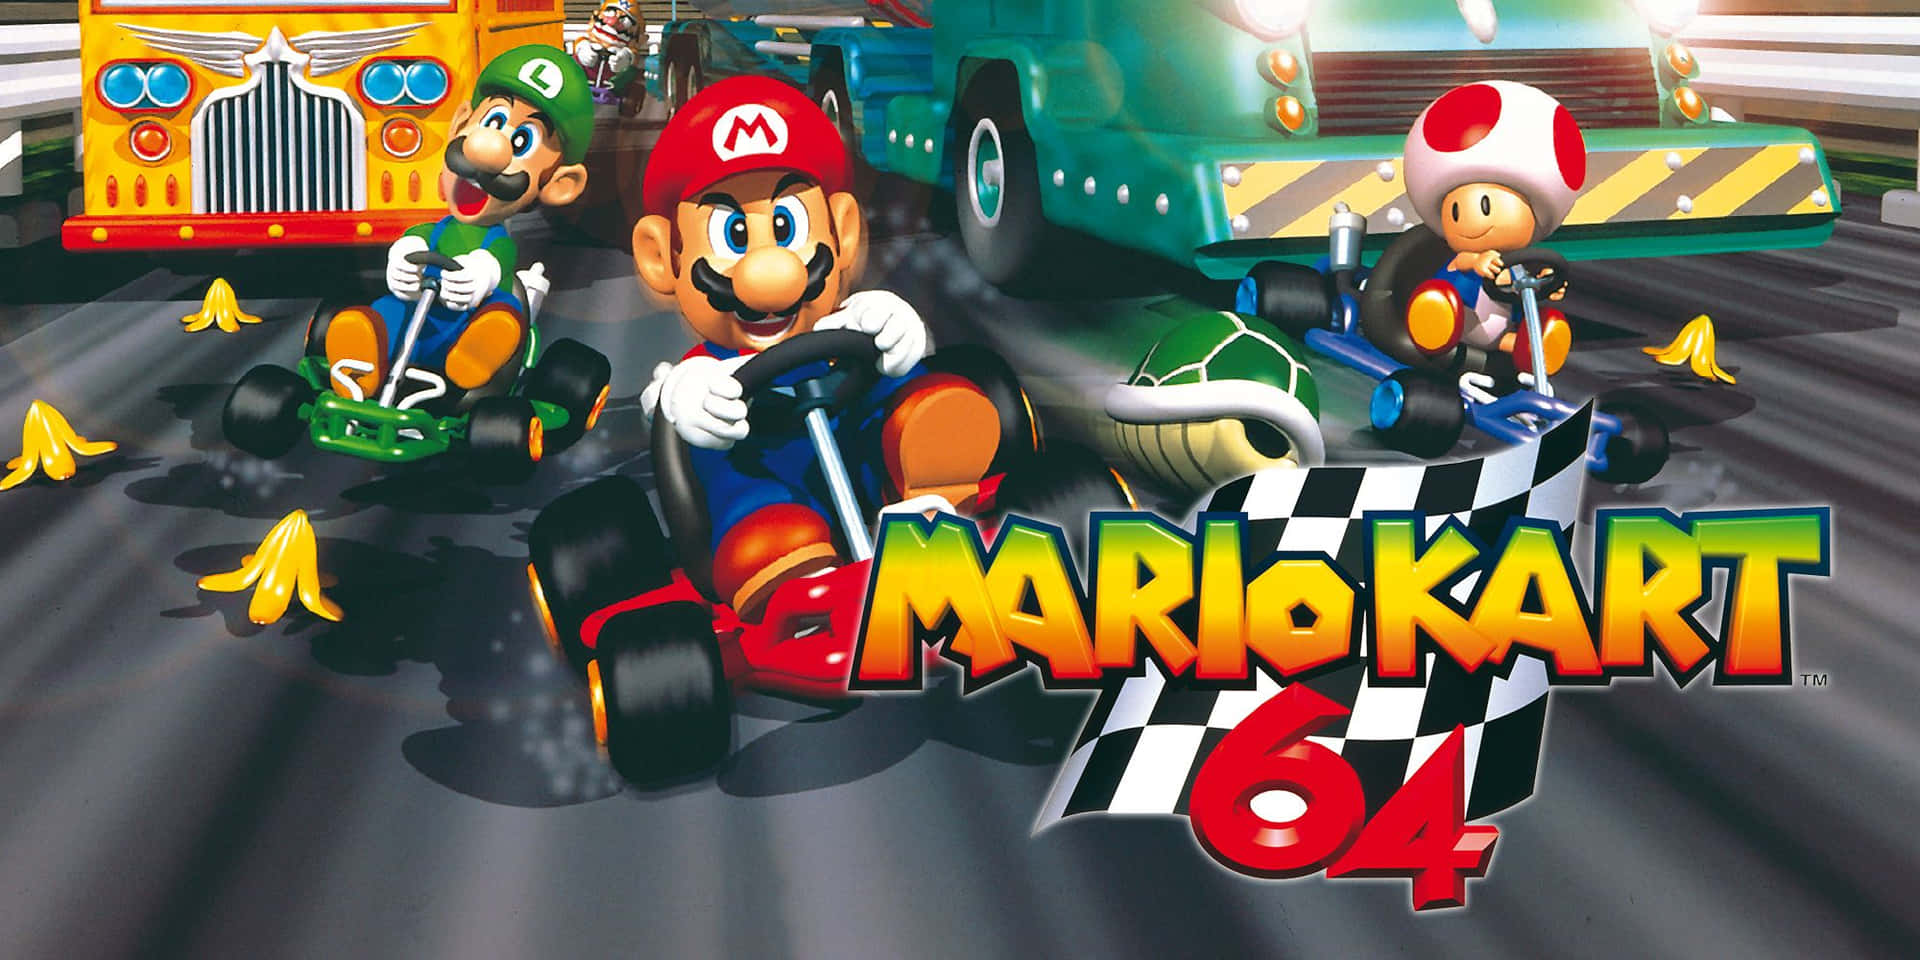 Forderedeine Freunde Zu Einem Rennen In Mario Kart Heraus.